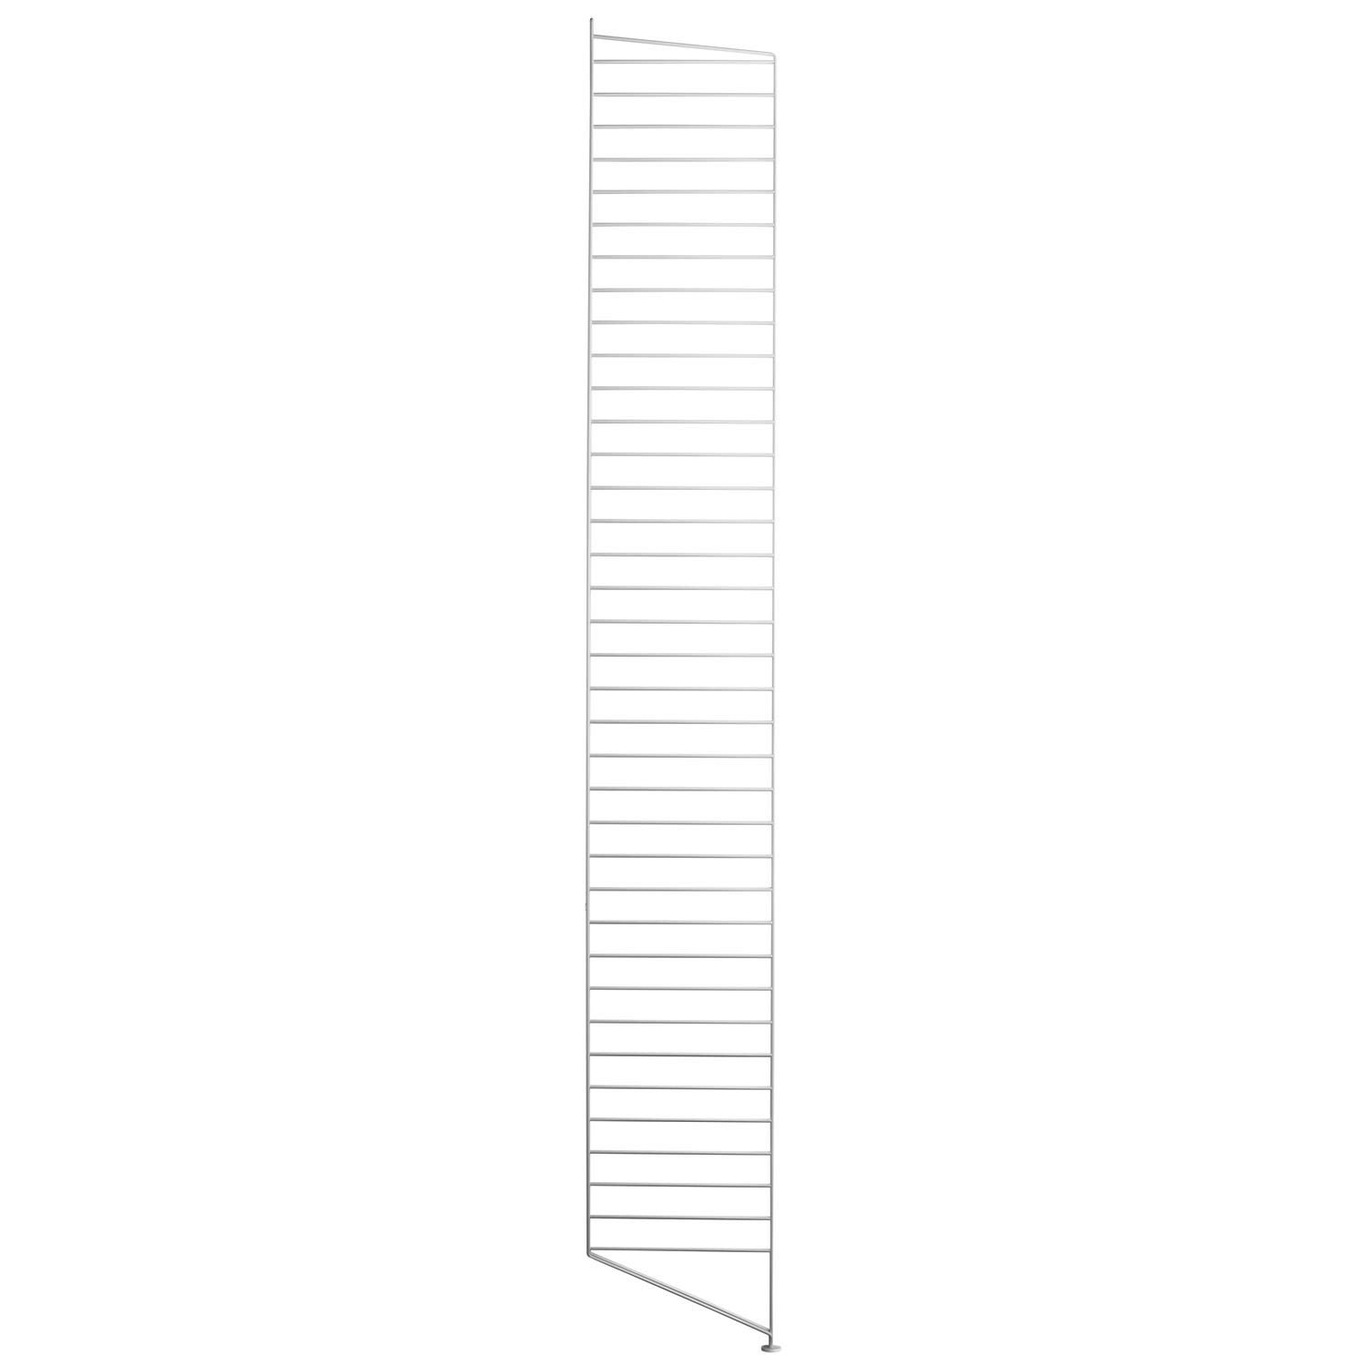 String Paneelit Lattia 30x200 cm 1 kpl:n pakkaus, Valkoiset